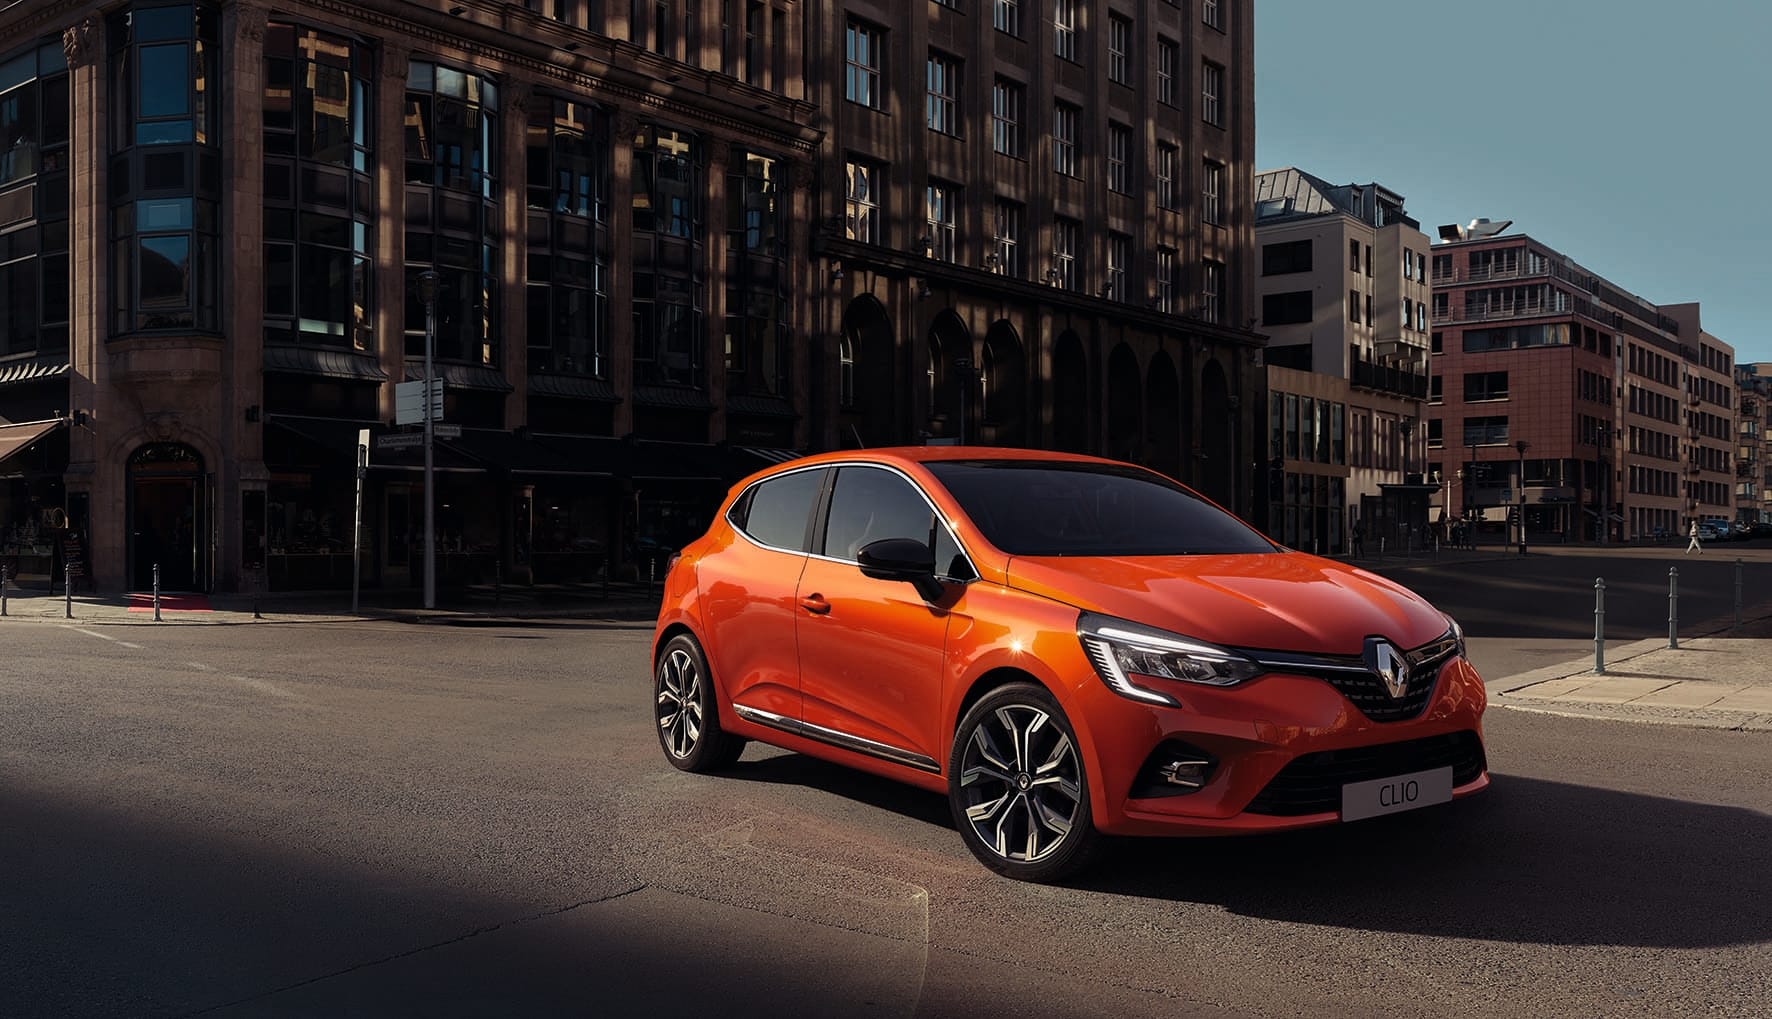 Unter Strom: Der neue Renault Clio soll auch mit Mild-Hybrid-Antrieb vorfahren.